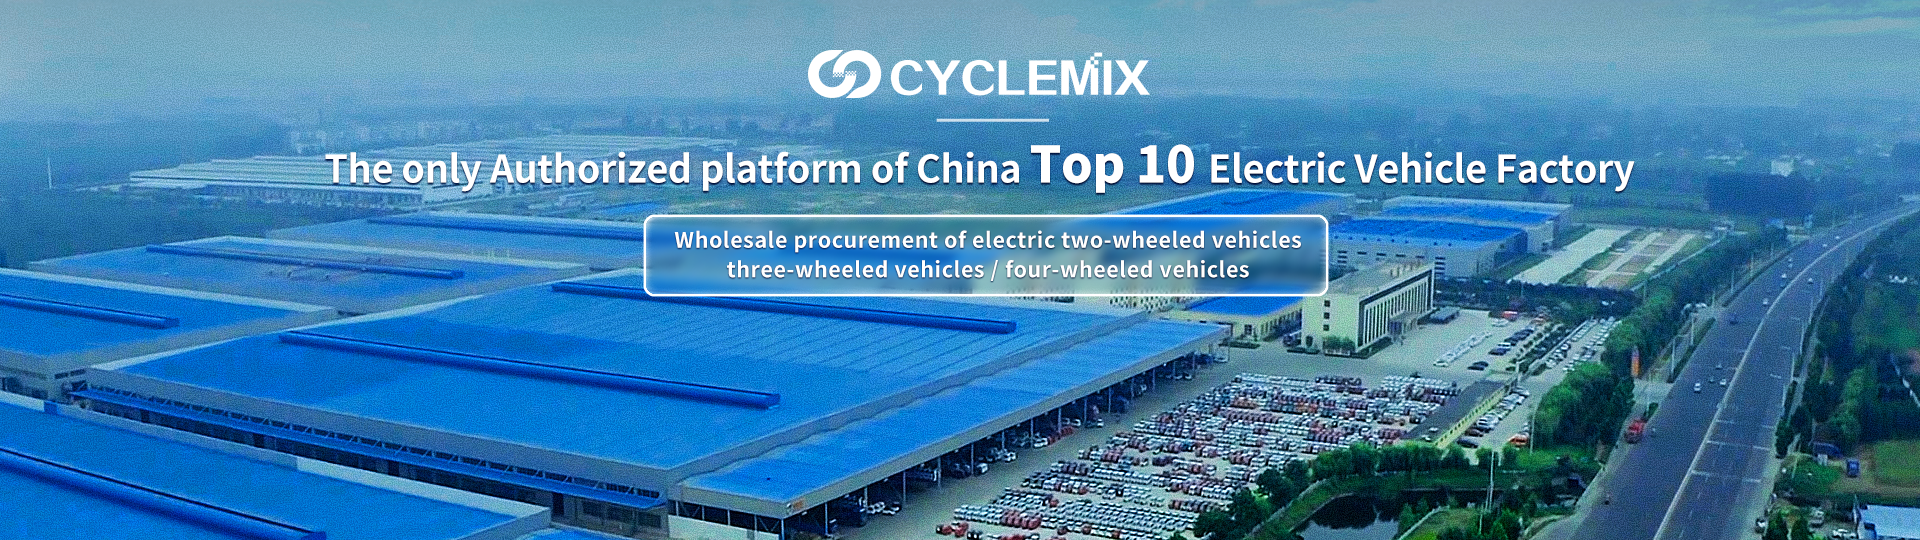 CYCLEMIX Die einzige autorisierte Partei/Plattform der China Top 10 Electric Vehicle Factory